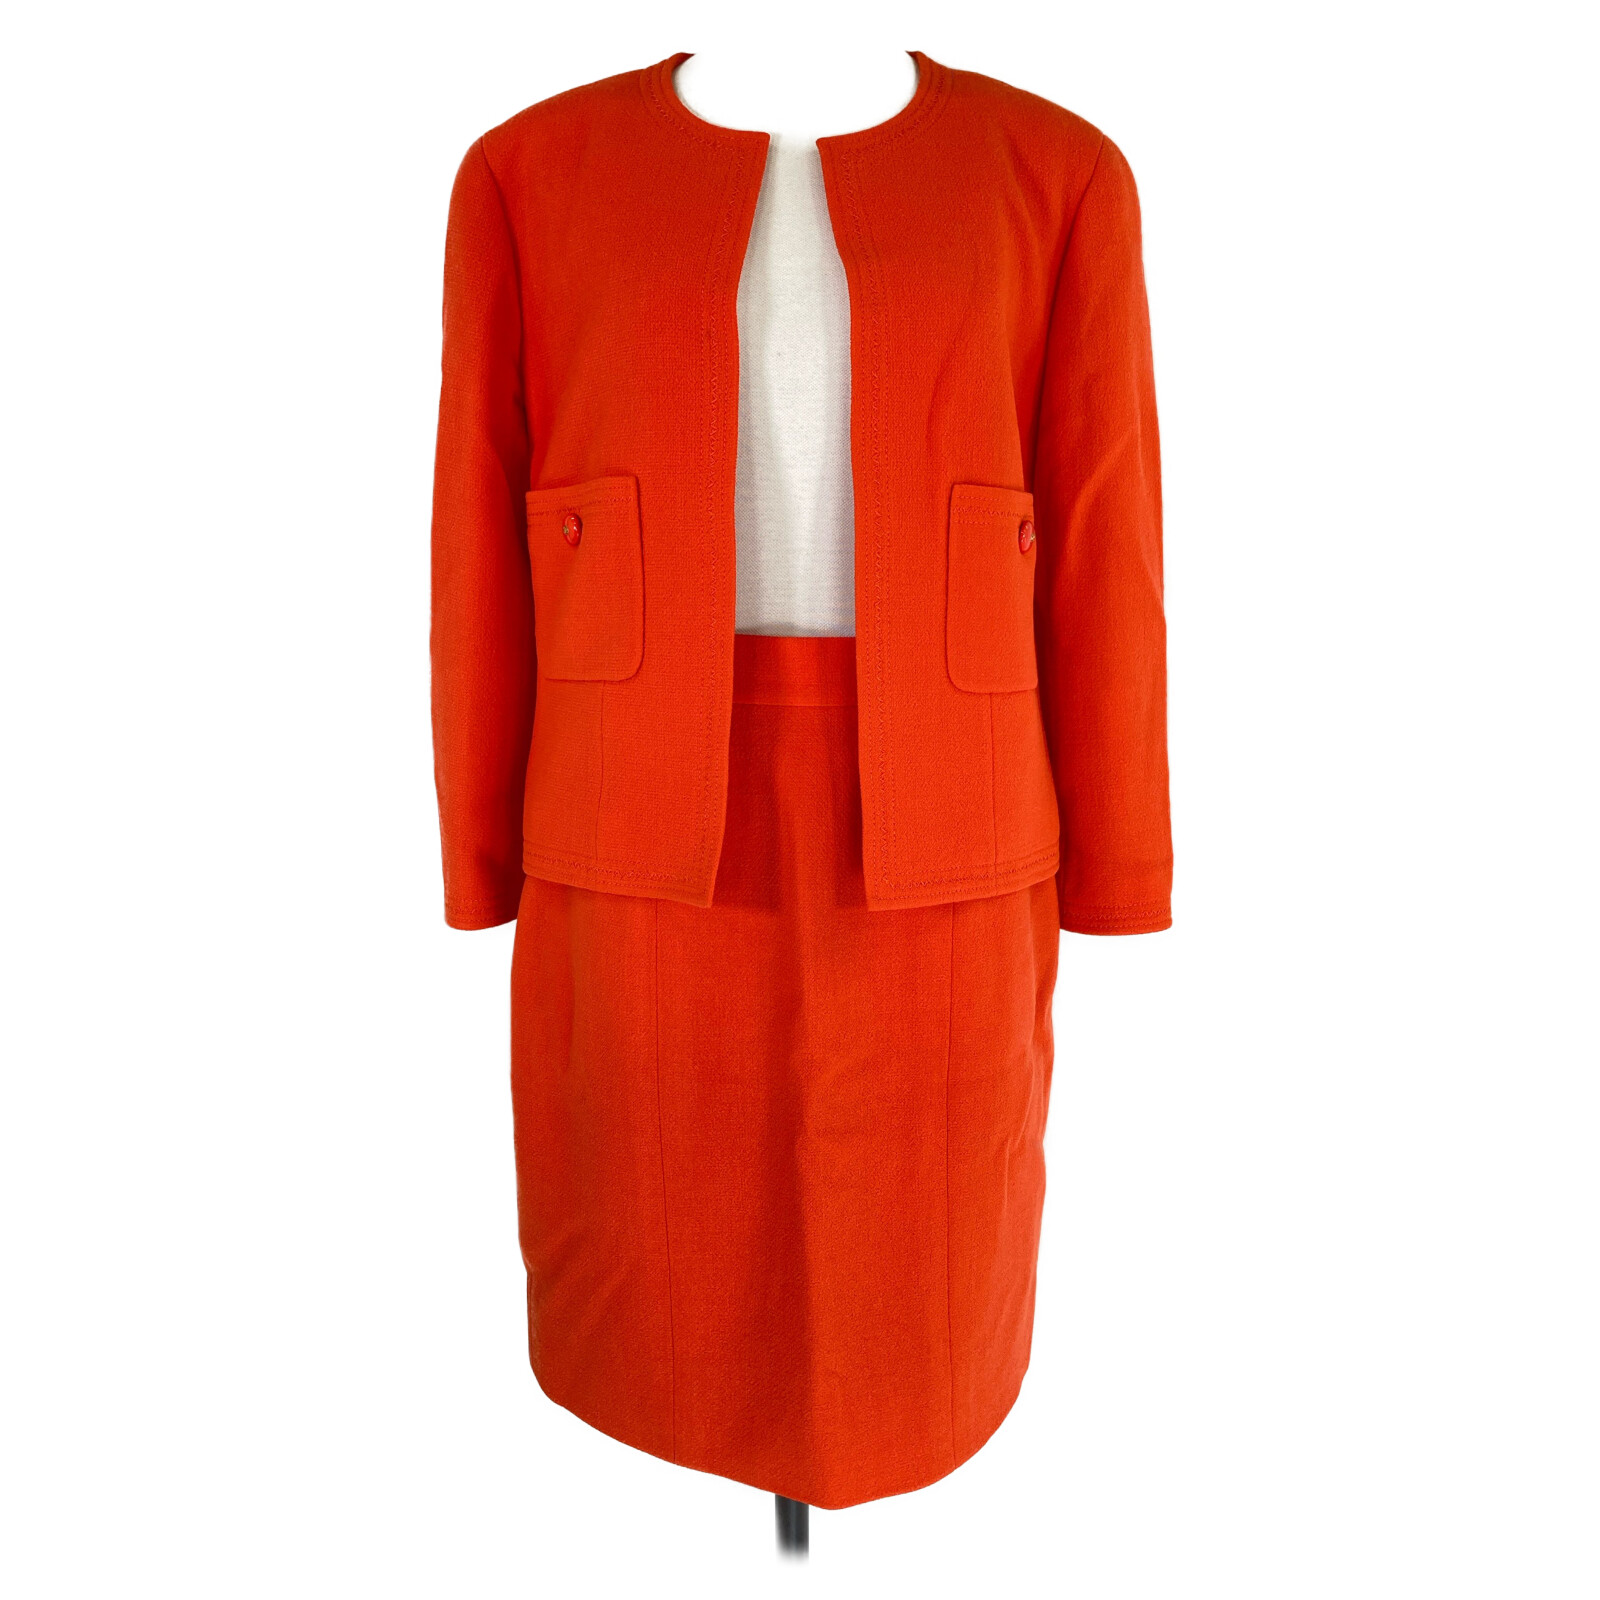  прекрасный товар / внутренний стандартный CHANEL Chanel 20520 шерсть no color жакет / узкая юбка костюм 40 orange женский 